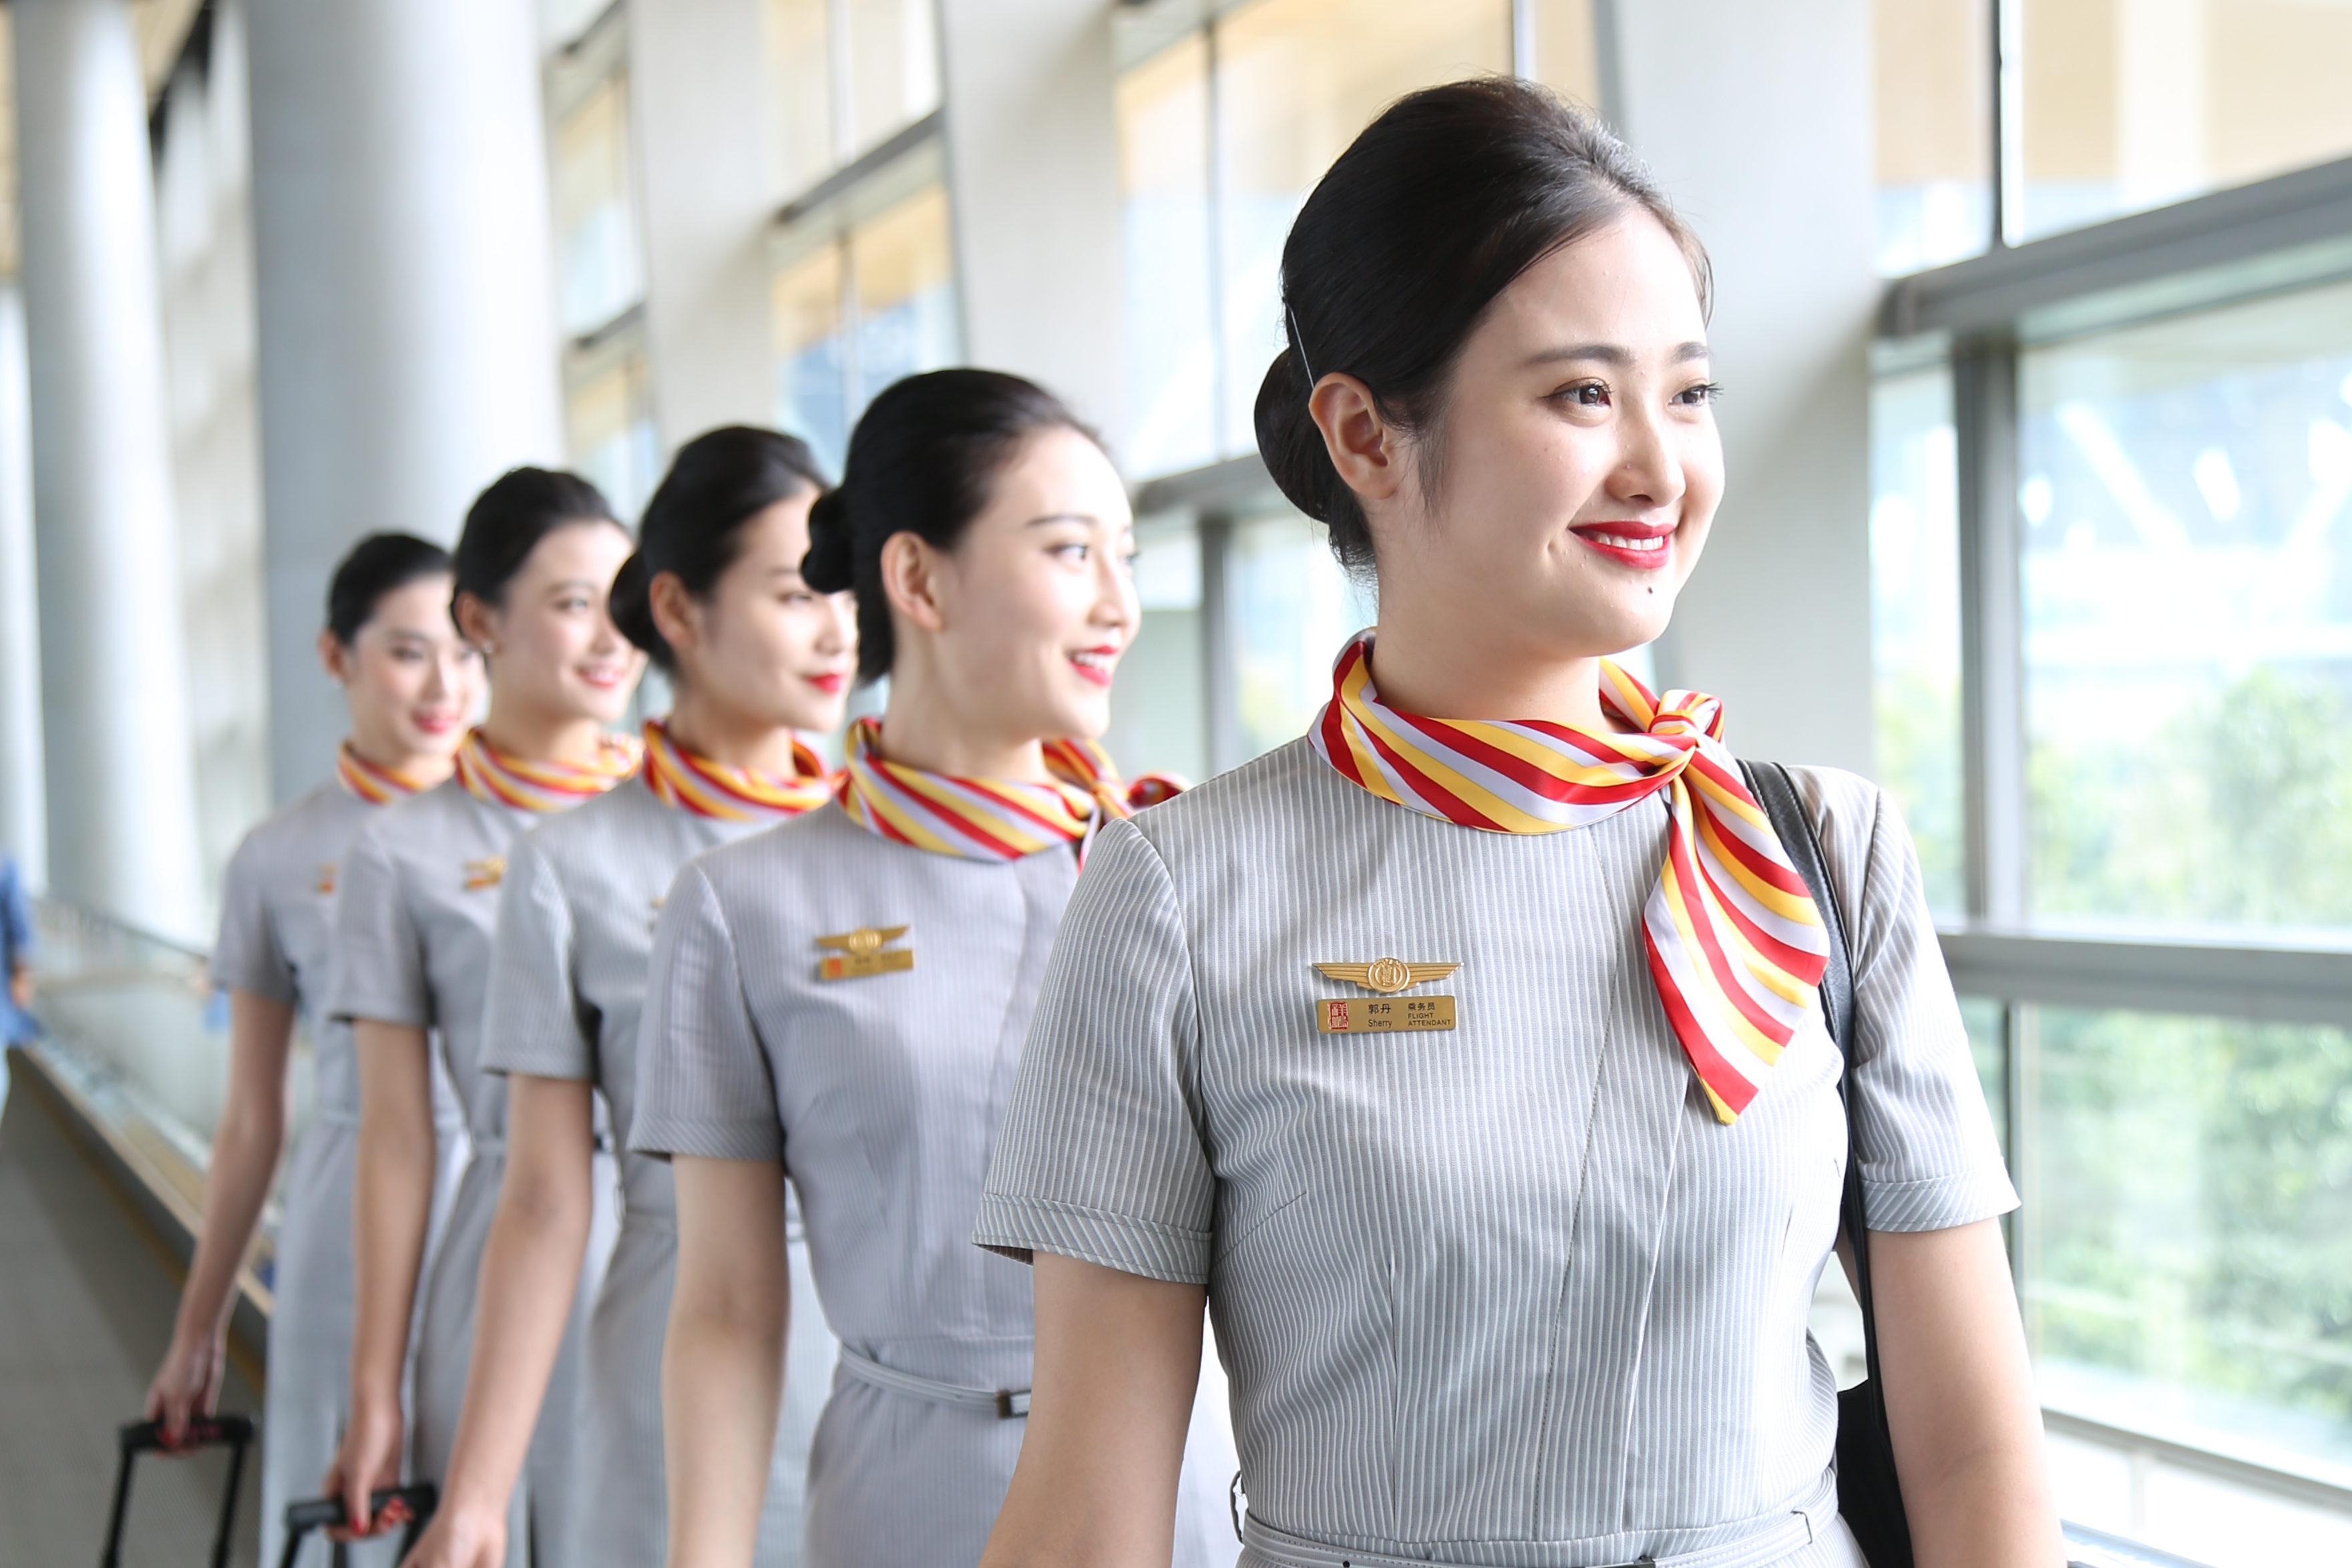 四川航空空姐空少新款制服-中国时尚制服设计网